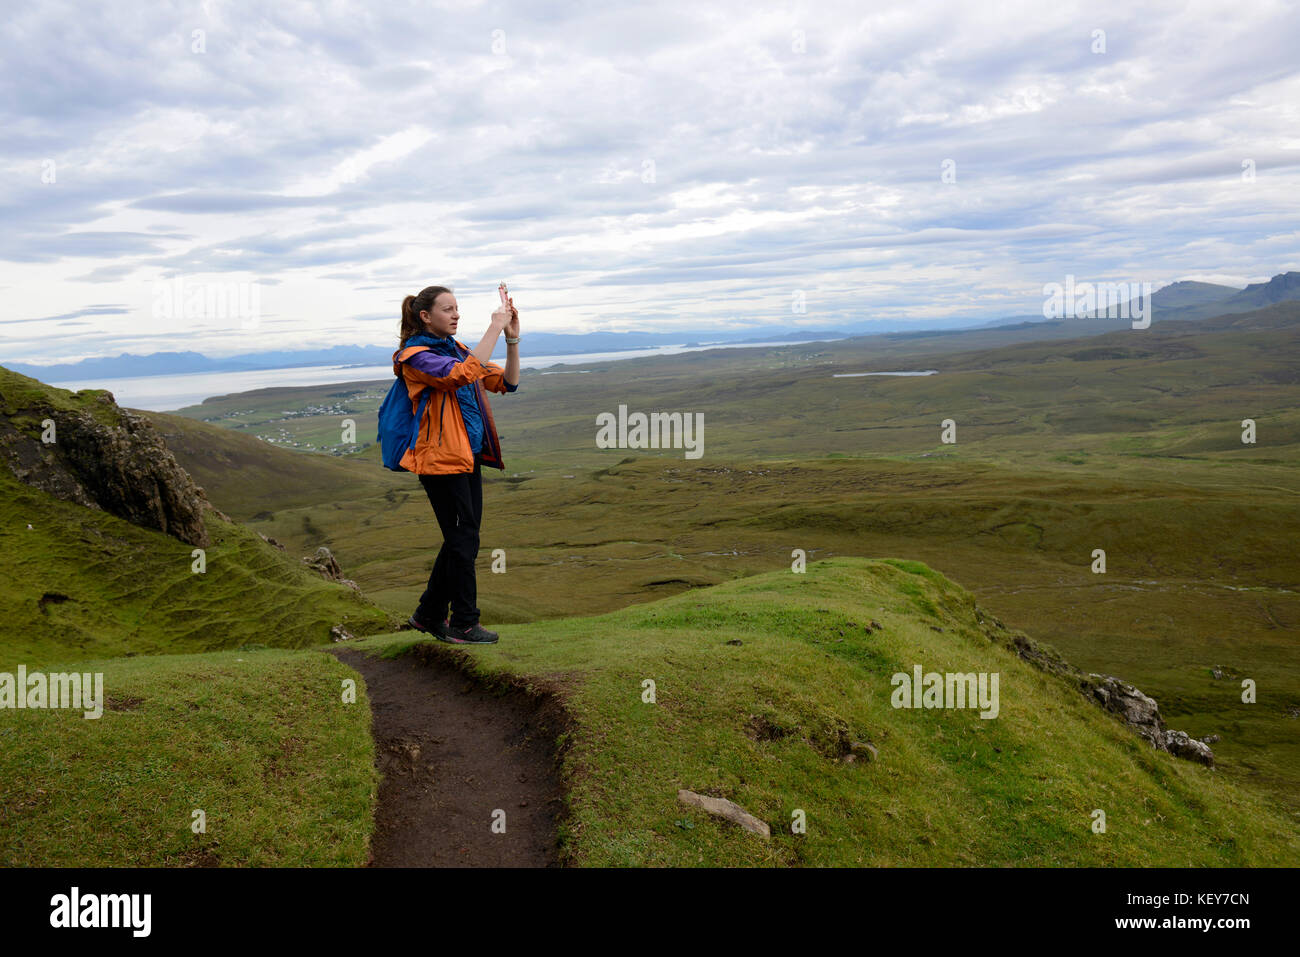 Schottische Highlands, Isle of Skye. cuith-raing, oder quiraing. Wanderer nimmt ein Panoramabild mit Ihrem Handy. Stockfoto